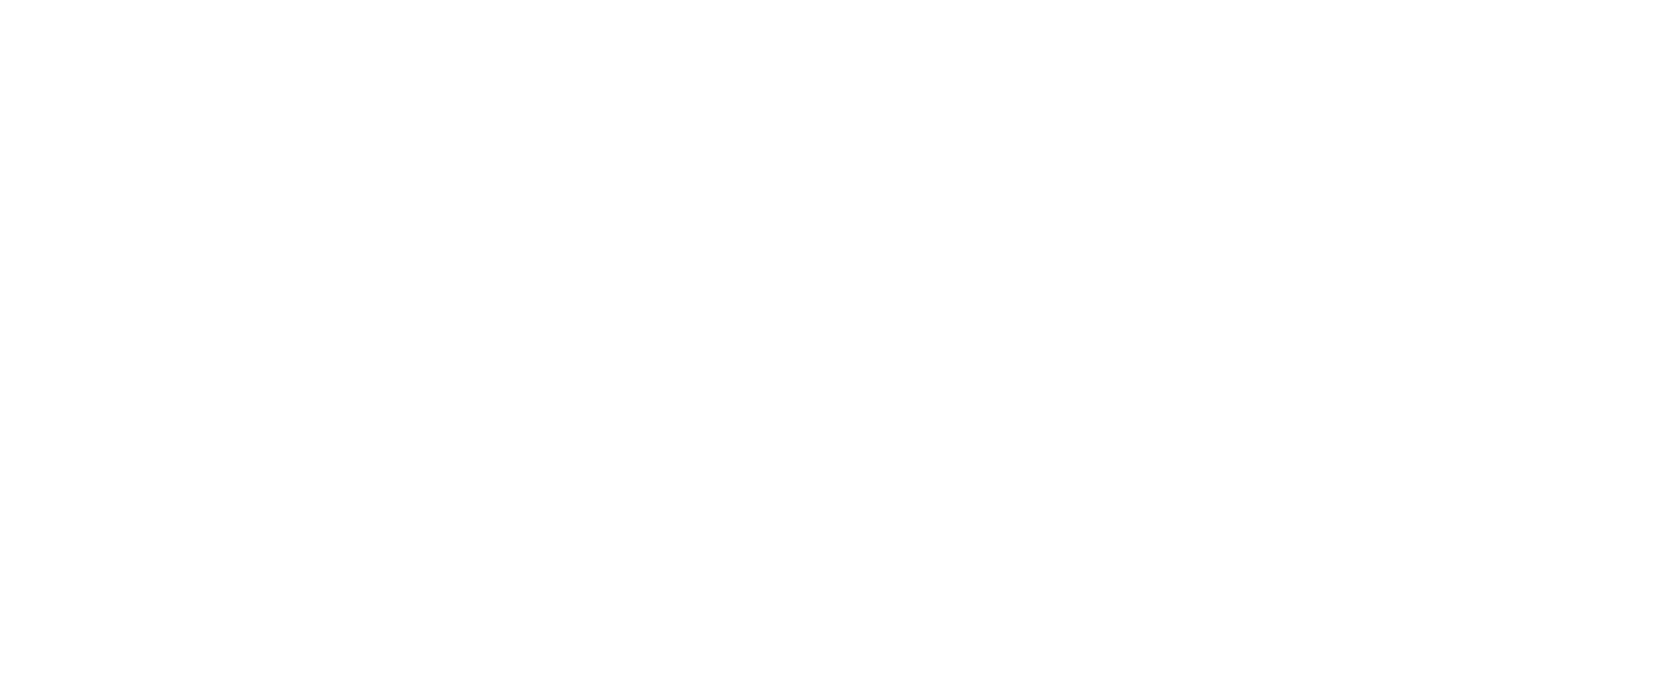 CG Elementum